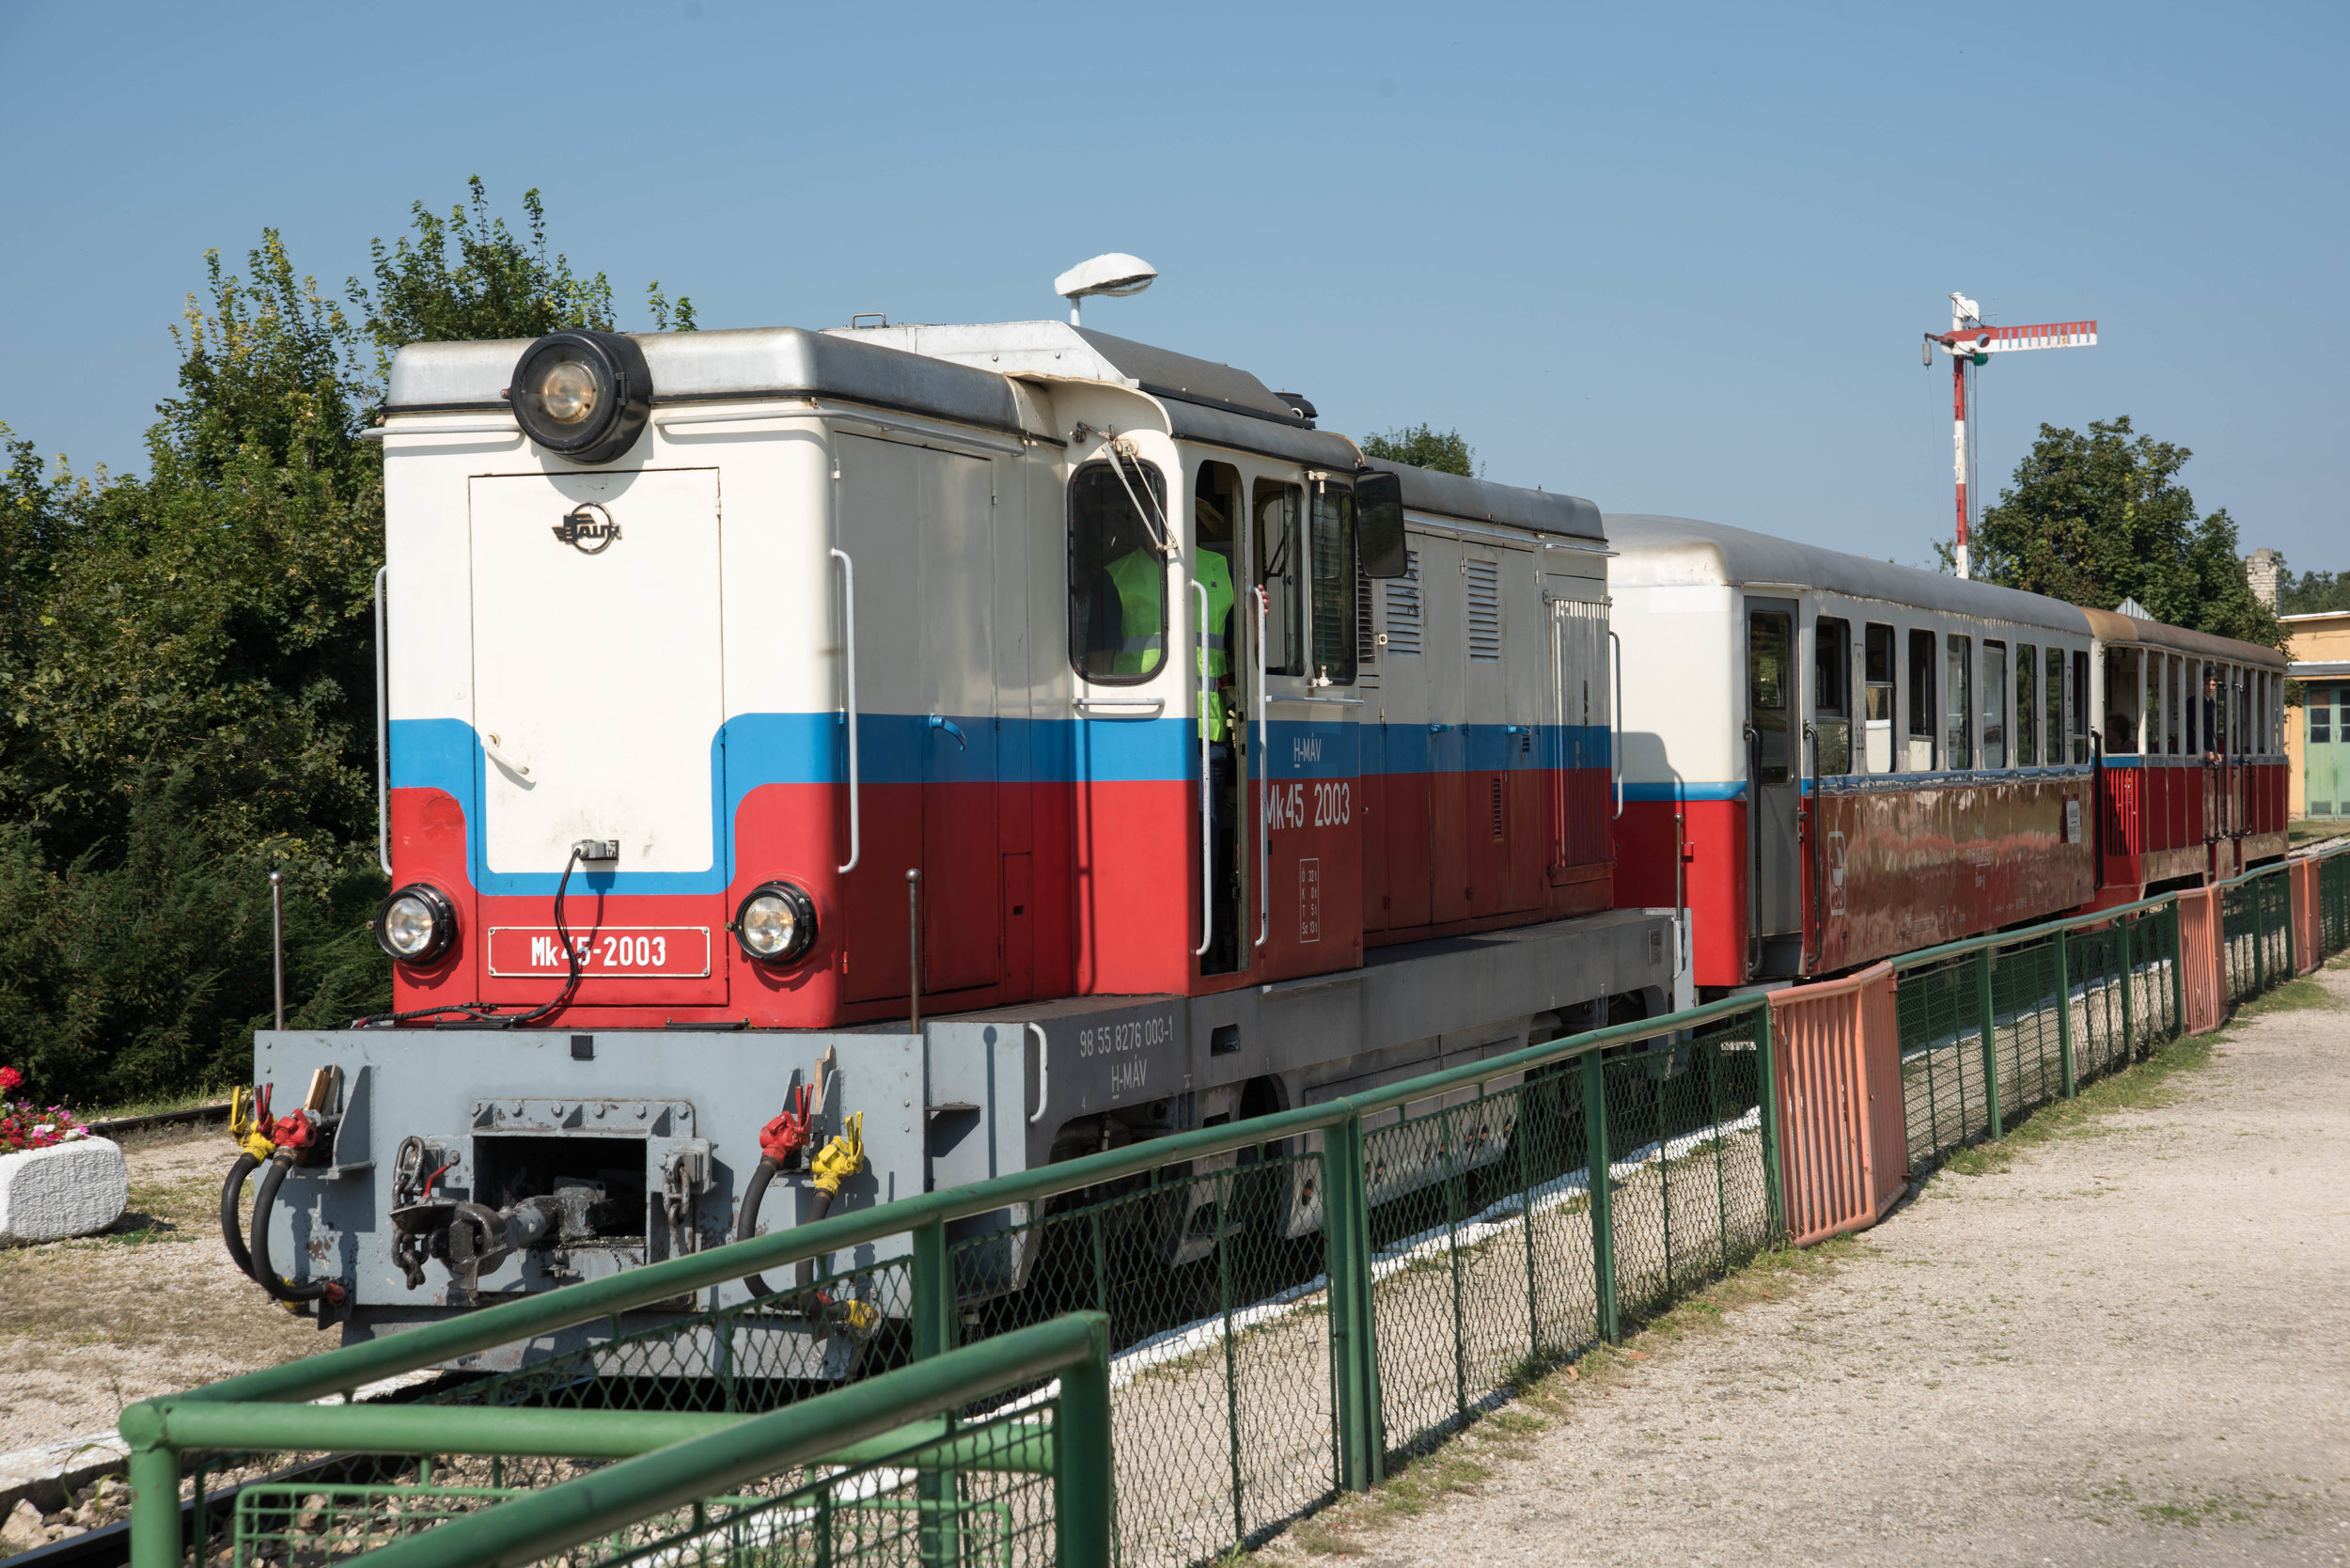 Children's Railway train, Szechenyi -hegy, Buda Hills, Budapest, Hungary